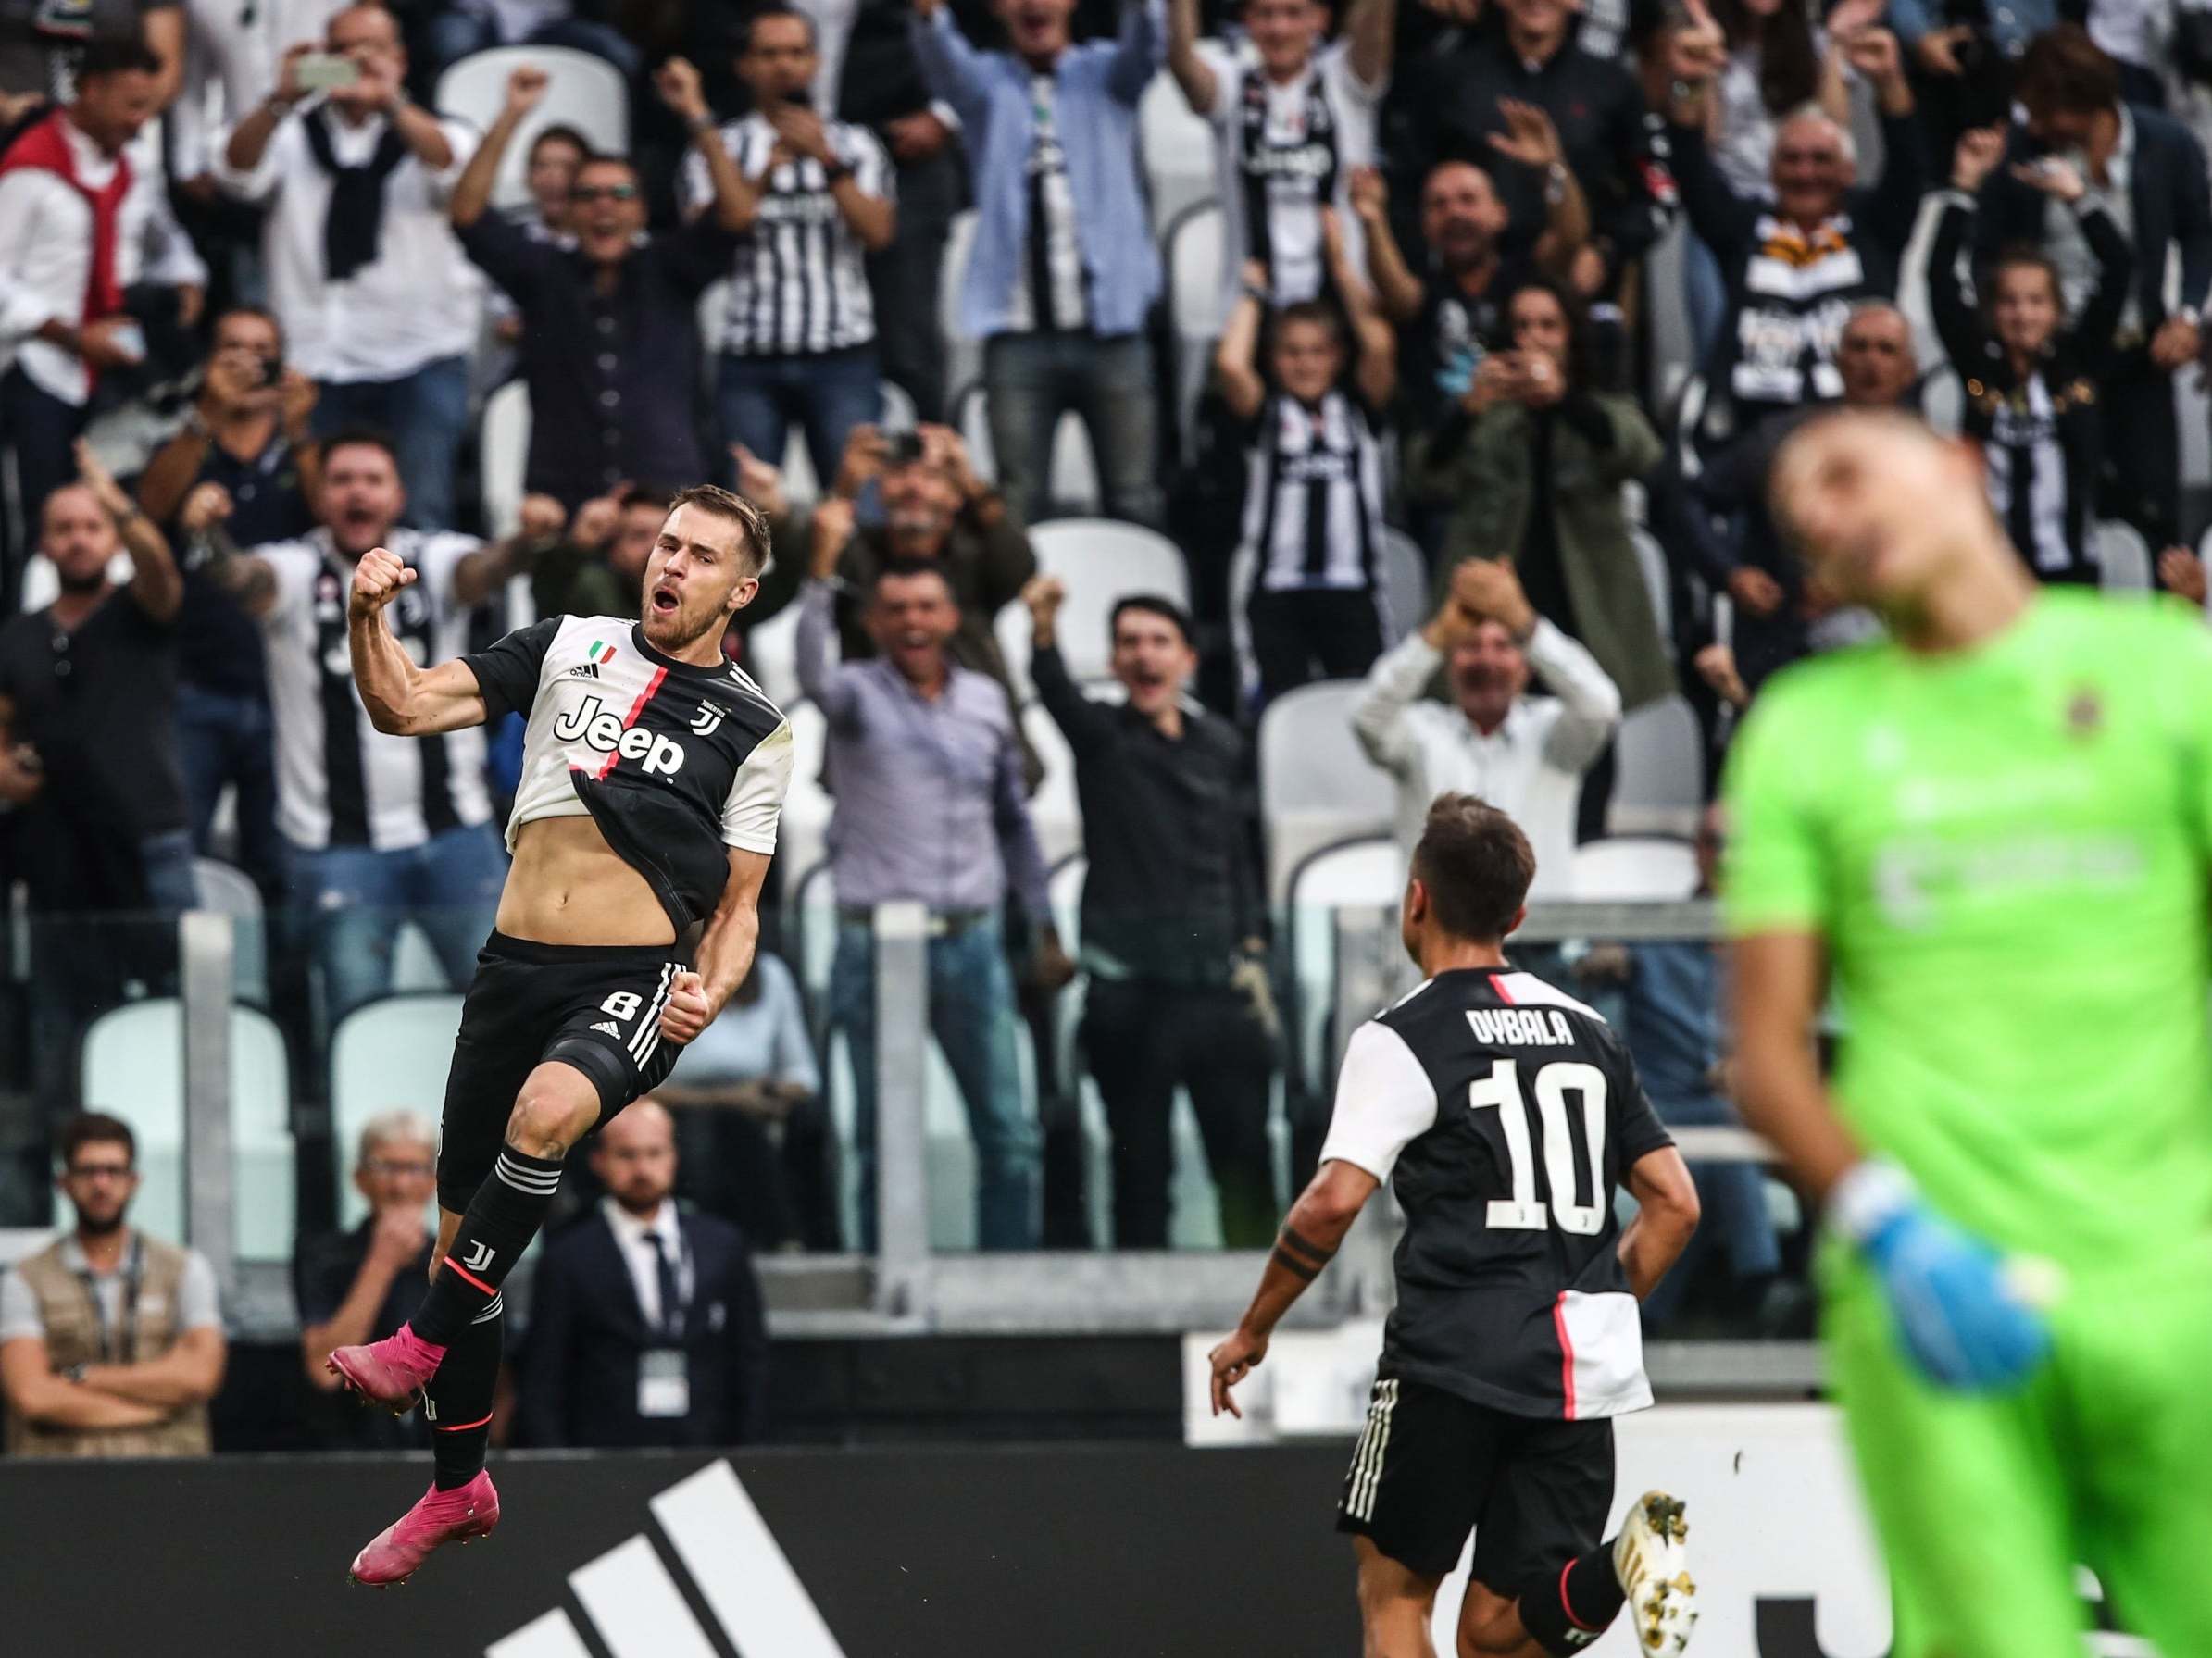 Aaron Ramsey celebrates scoring his first goal for Juventus